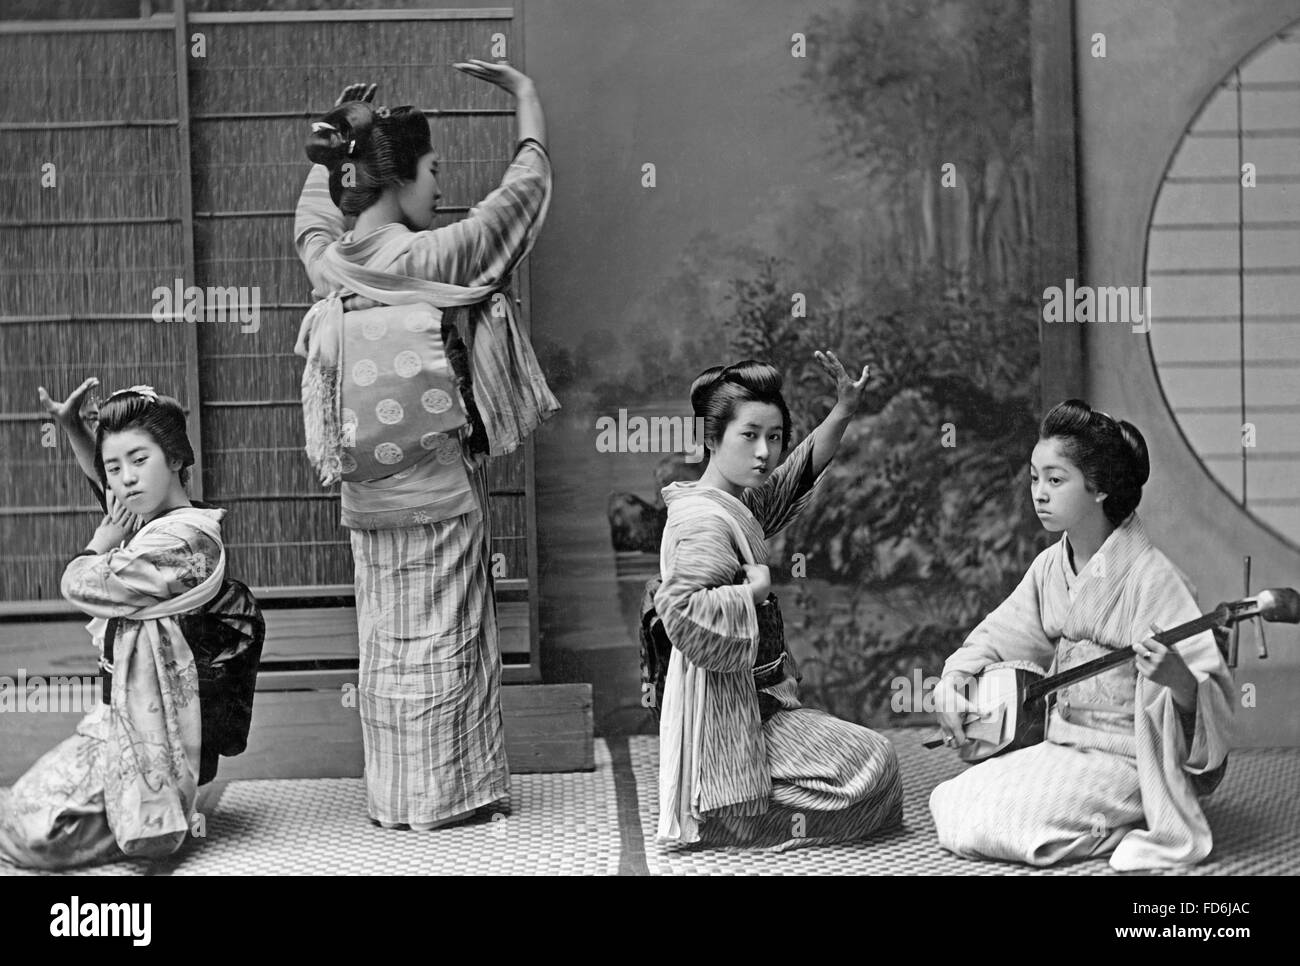 Japanese geishas, 1910's Stock Photo